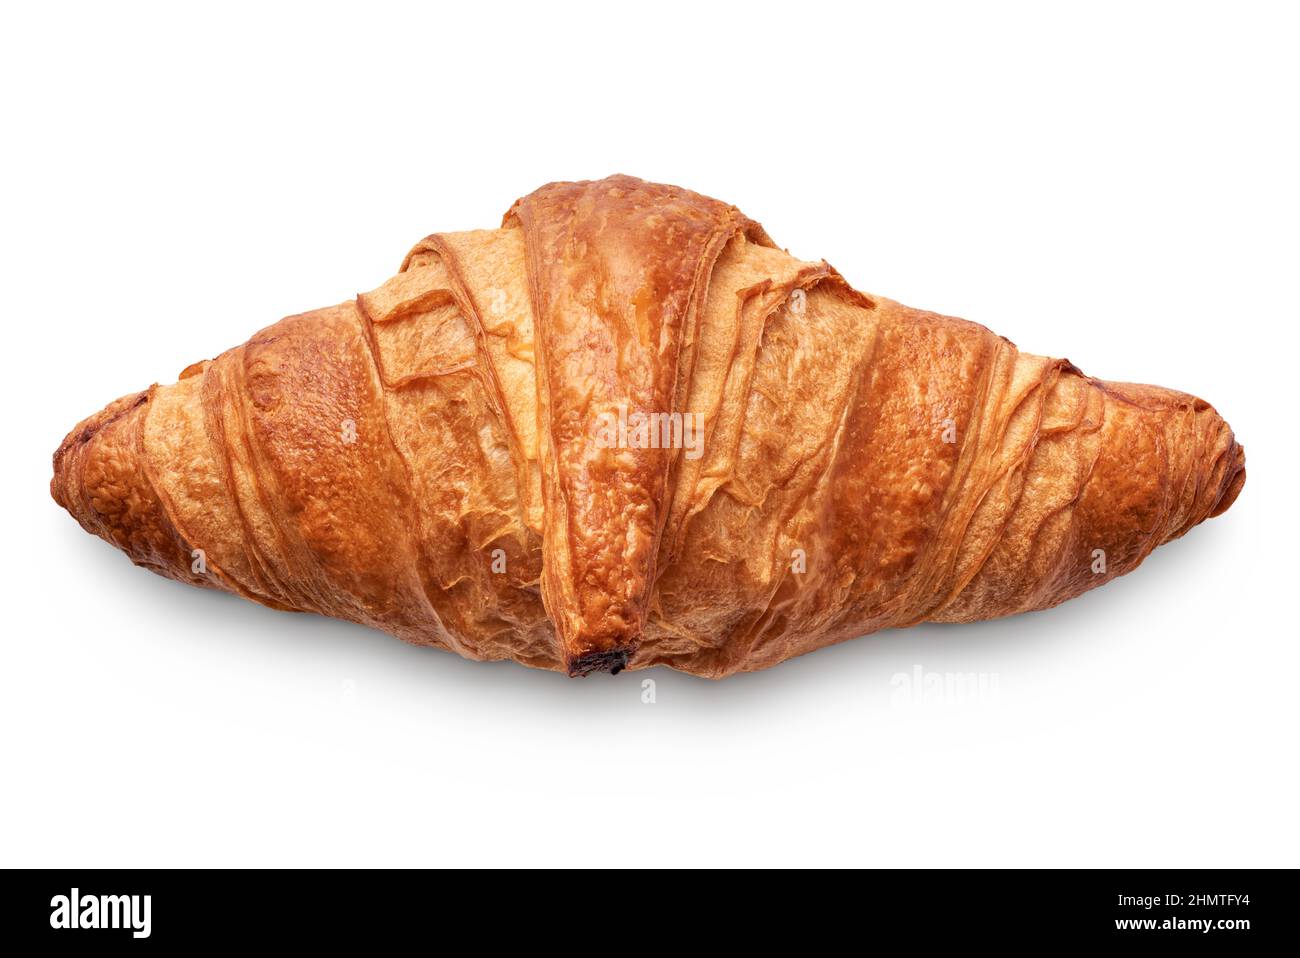 Isolierte Objekte: Traditionelles Croissant, französische Blätterteig-Bäckerei, auf weißem Hintergrund Stockfoto